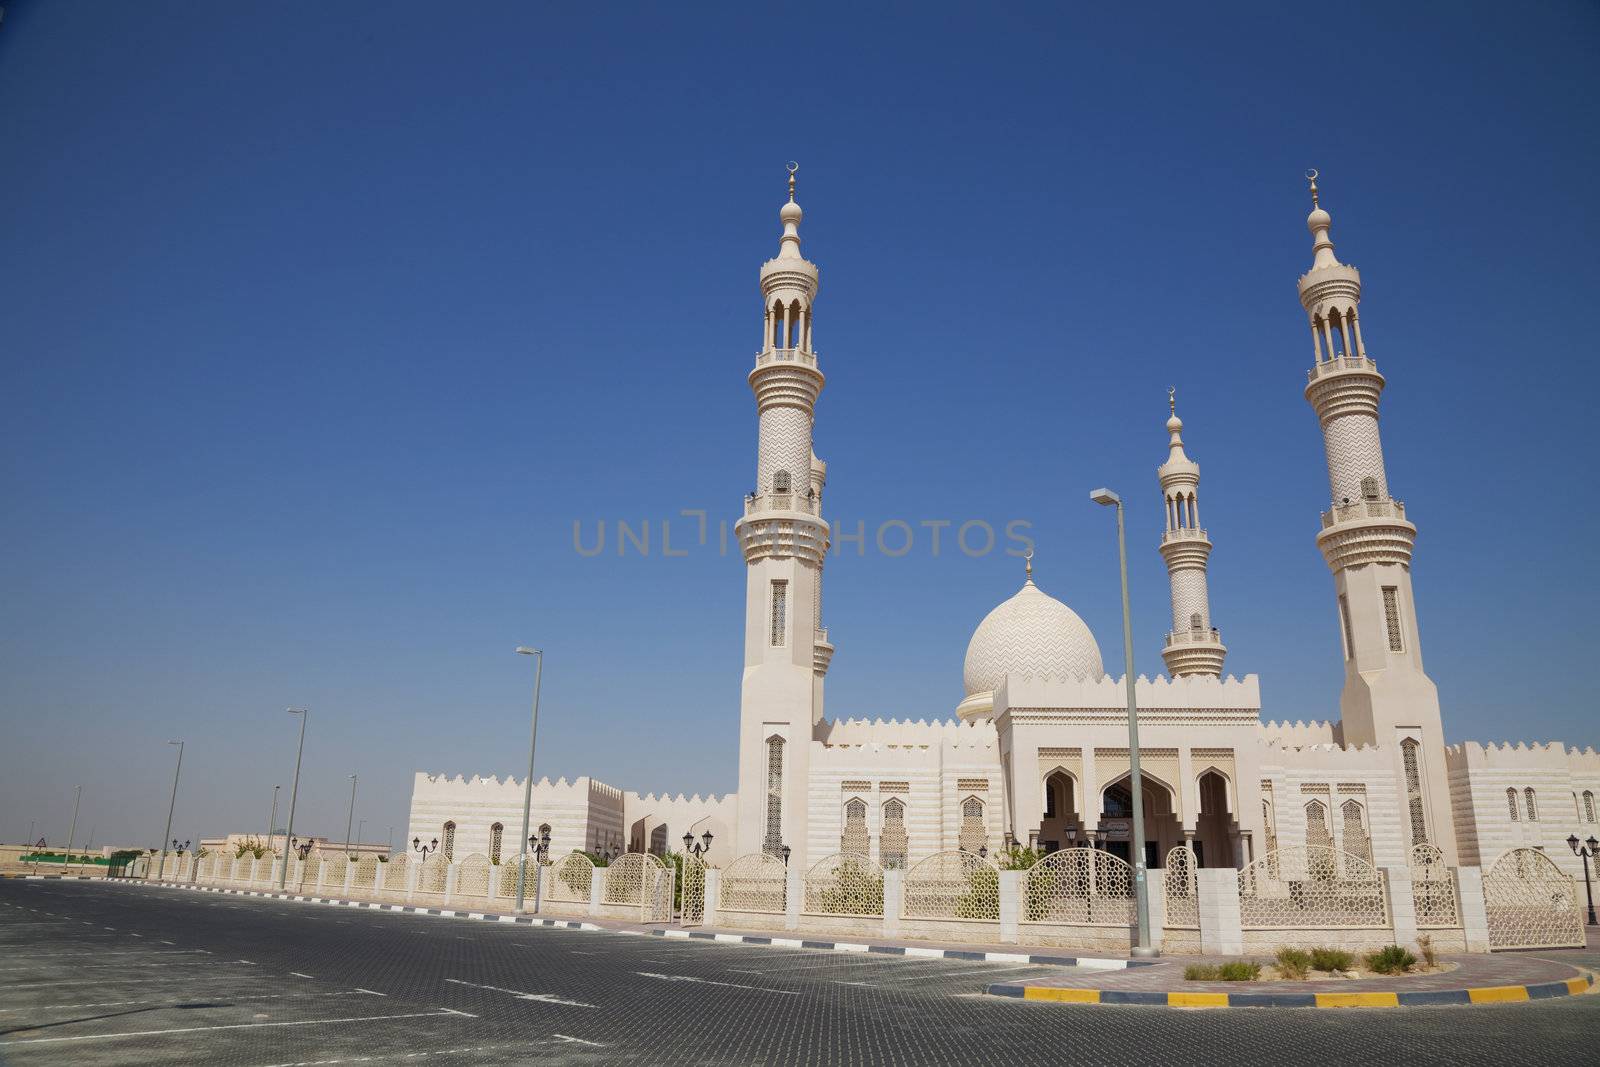 Al-Bahya Mosque, Abu Dhabi, UAE by shariffc